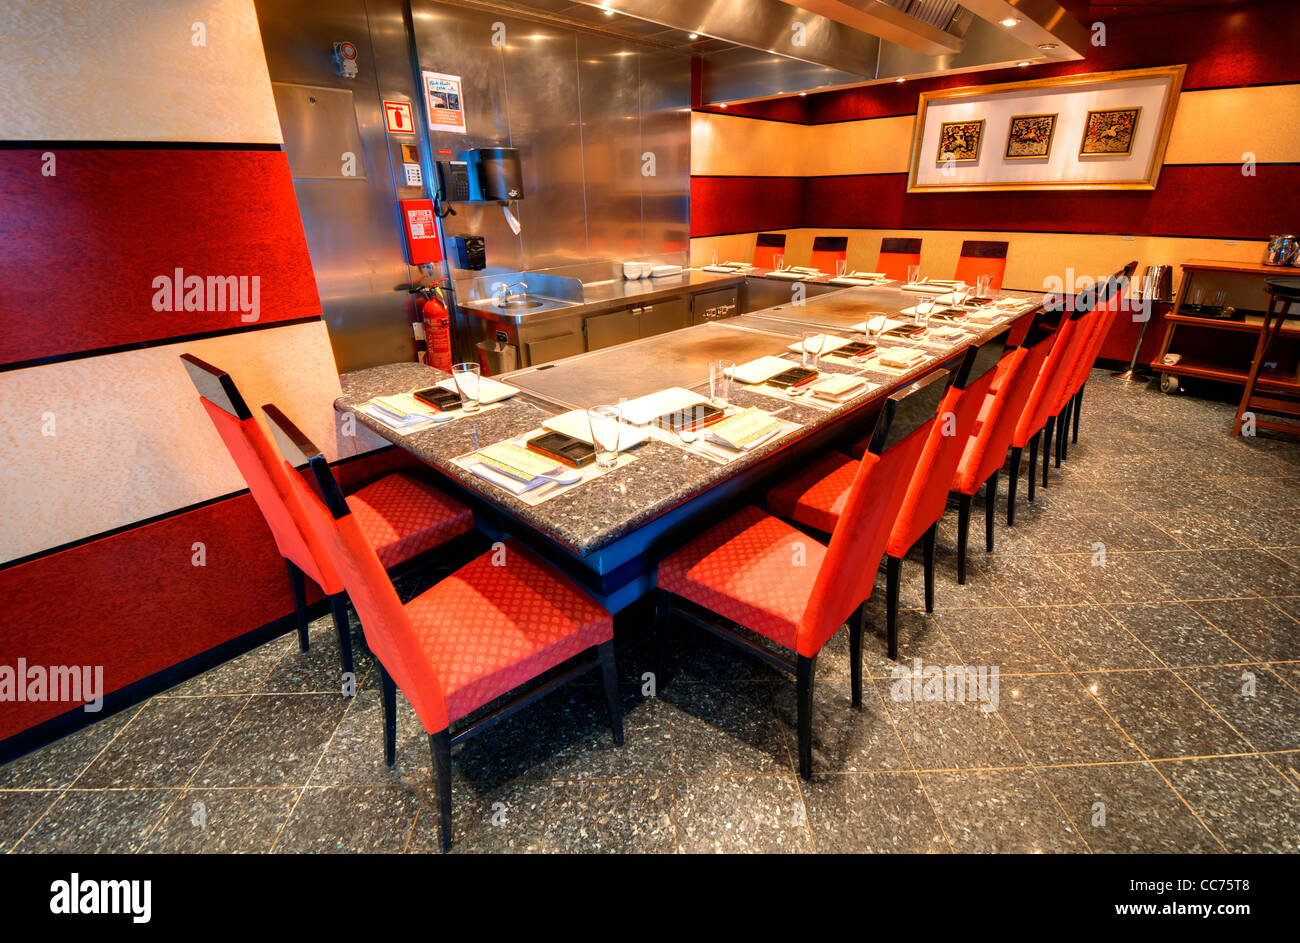 Salle à manger de style hibachi japonais Banque D'Images